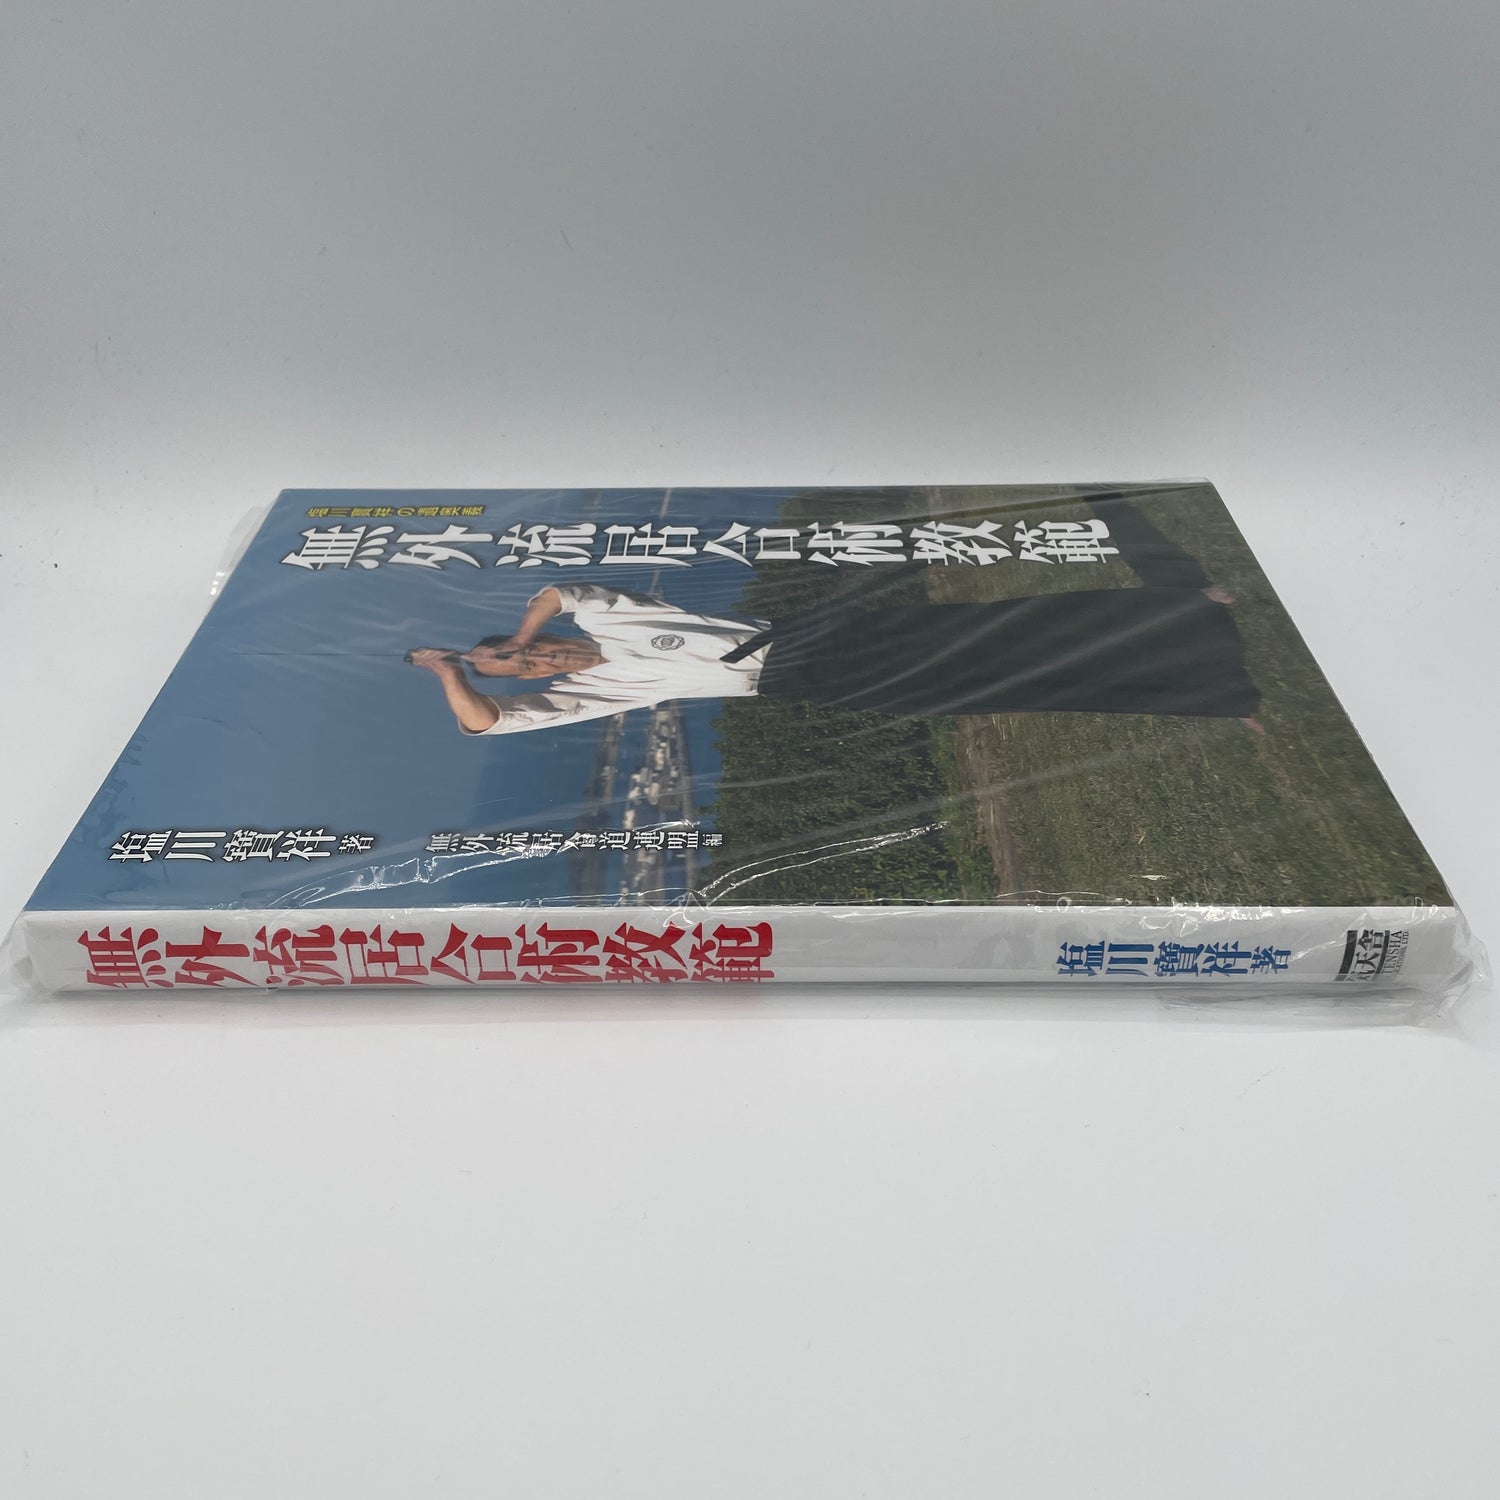 Mugai Ryu Battojutsu Kyohan (Hardcover) Book by Hosho Shiokawa (Preowned)